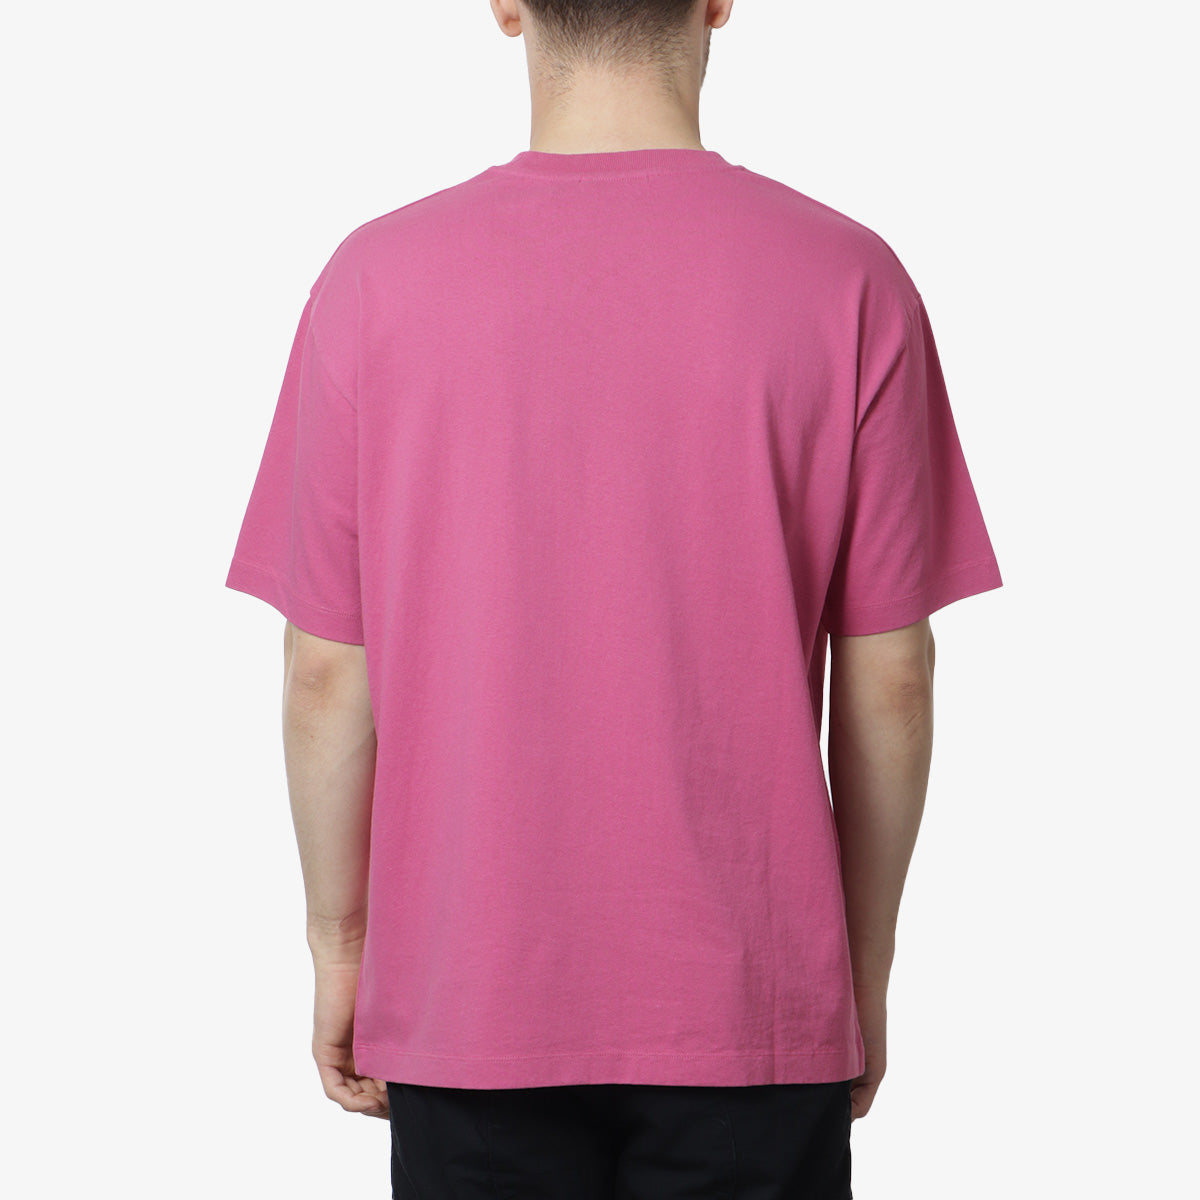 By Parra My Dear Swan T-Shirt, Pink, Detail Shot 3